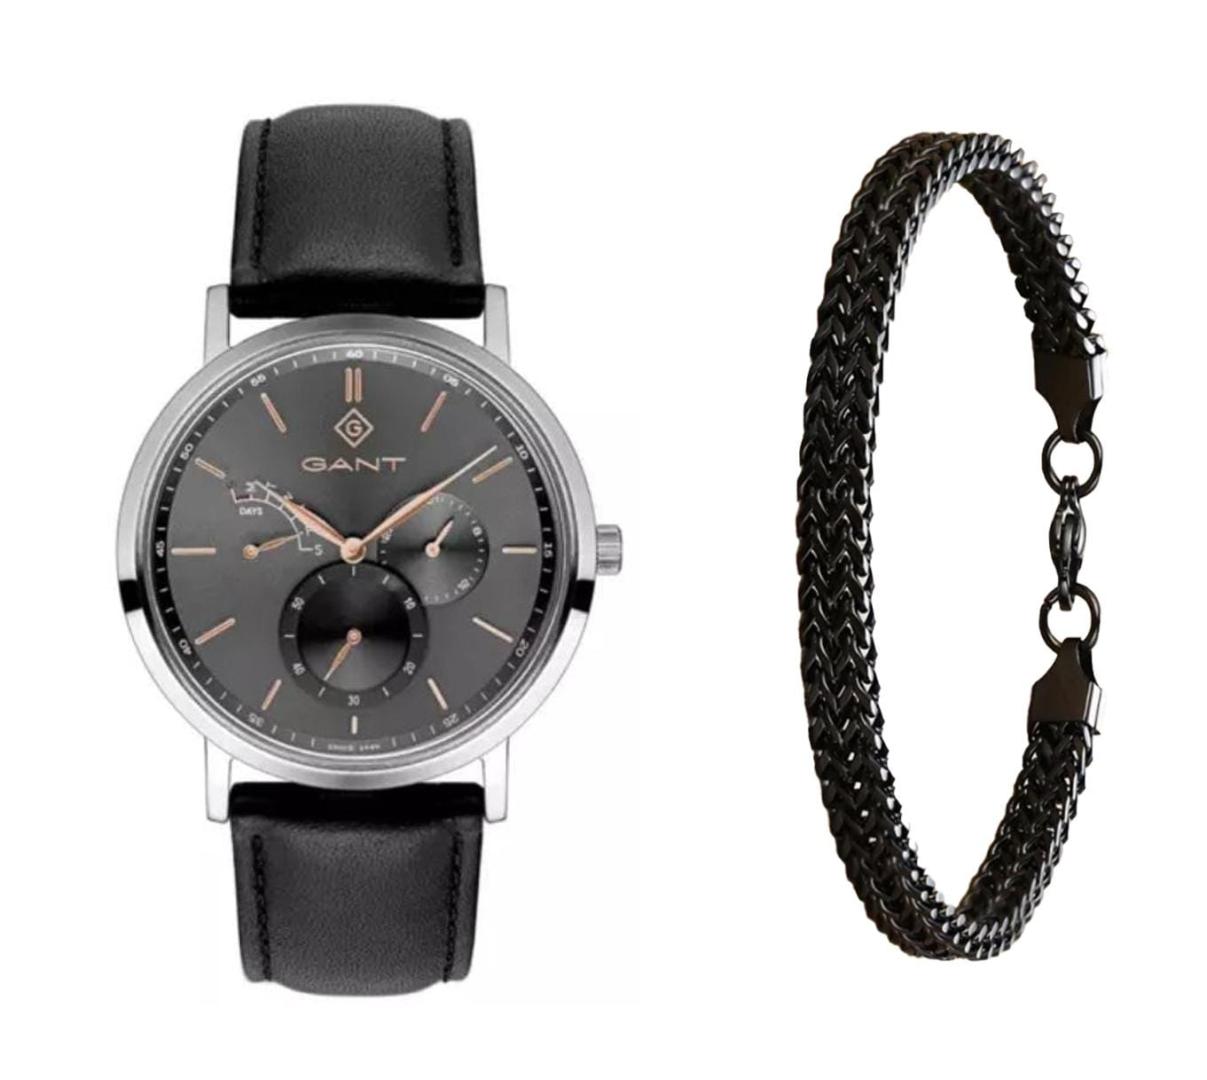 שעון יד אנלוגי לגבר gant g131001 גאנט עם צמיד חוליות שחור